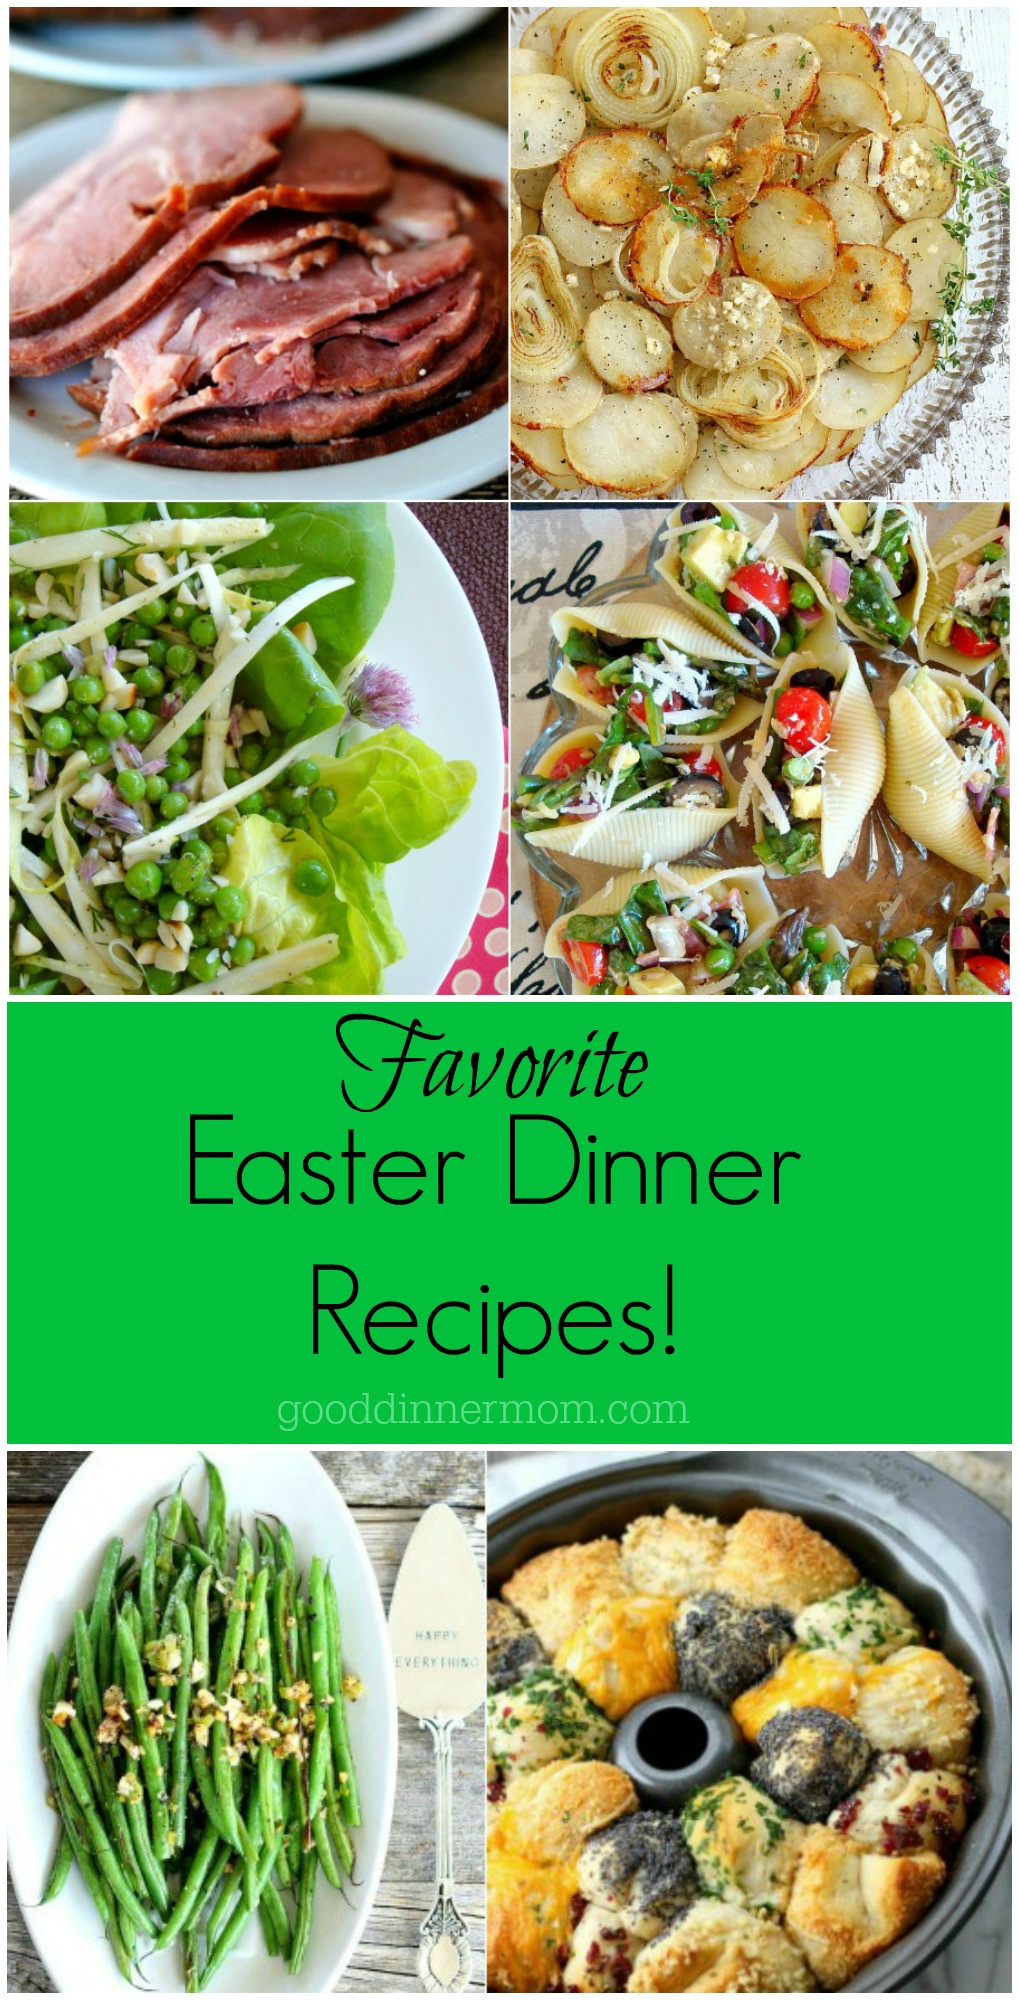 Easter Dinner Recipes Ideas
 Easter Dinner Recipes Good Dinner Mom